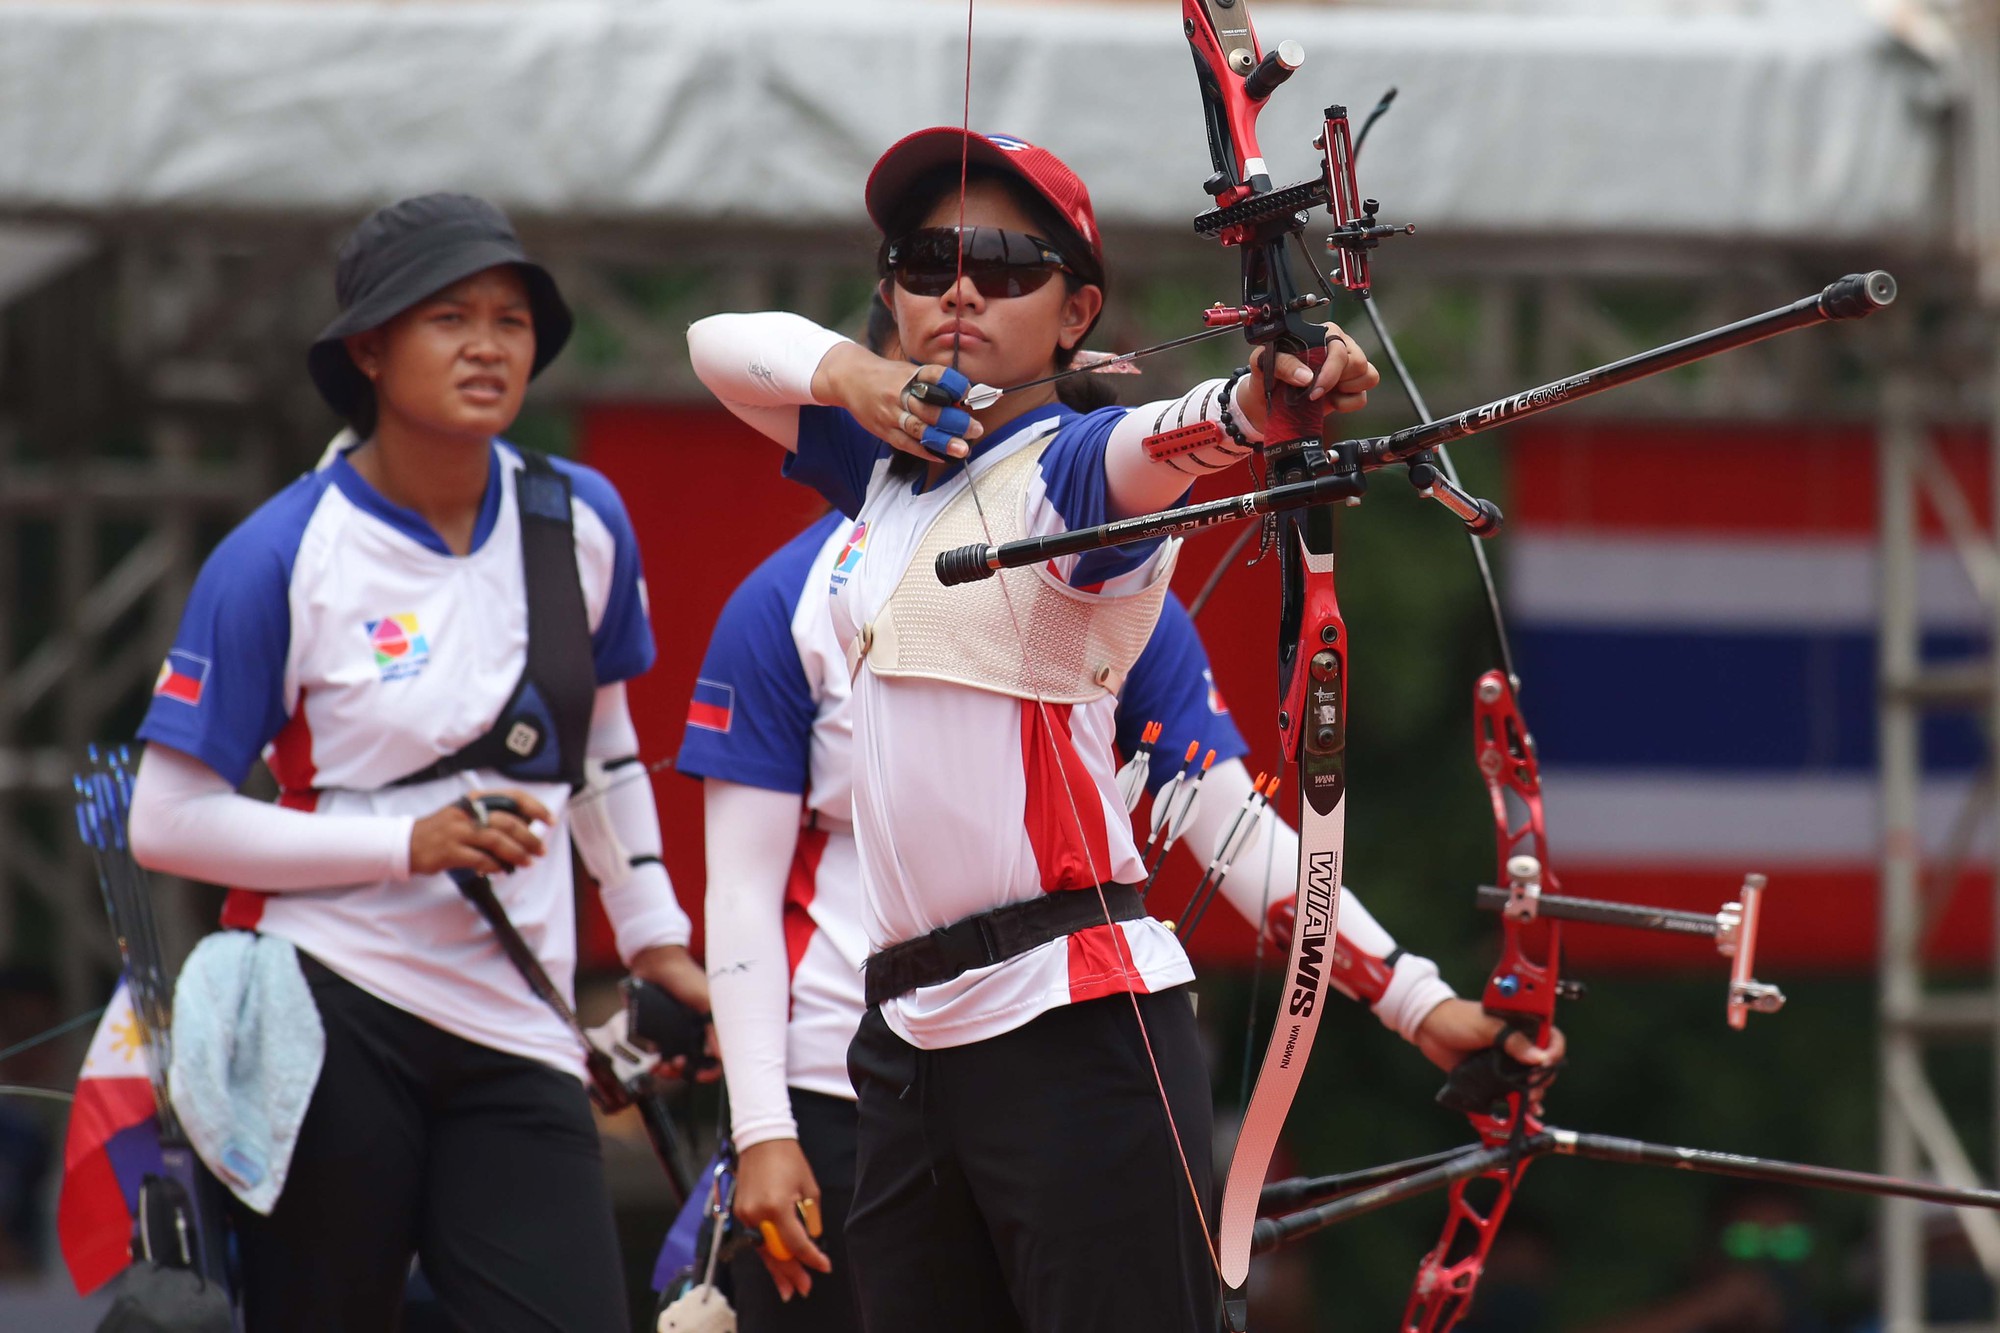 Người đẹp môn bắn cung Ánh Nguyệt cùng đồng đội mất huy chương vàng trước tuyển Philippines - Ảnh 9.